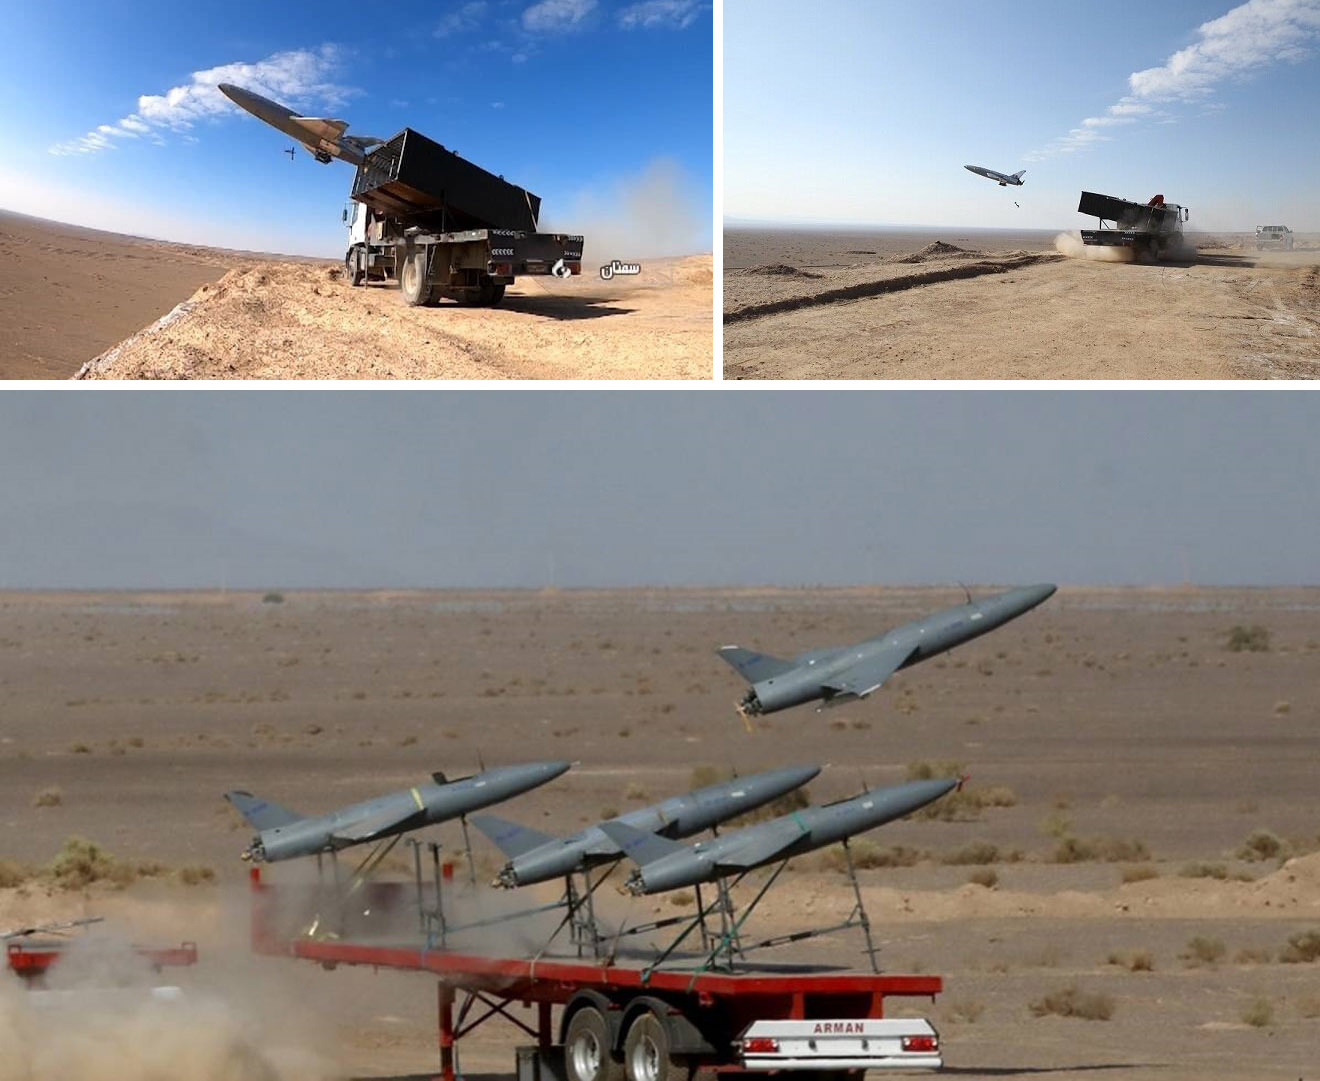 Iráni Arash-2 Kamikaze drónok: képességek és specifikációk, Defense Express, ukrajnai háború, orosz-ukrán háború